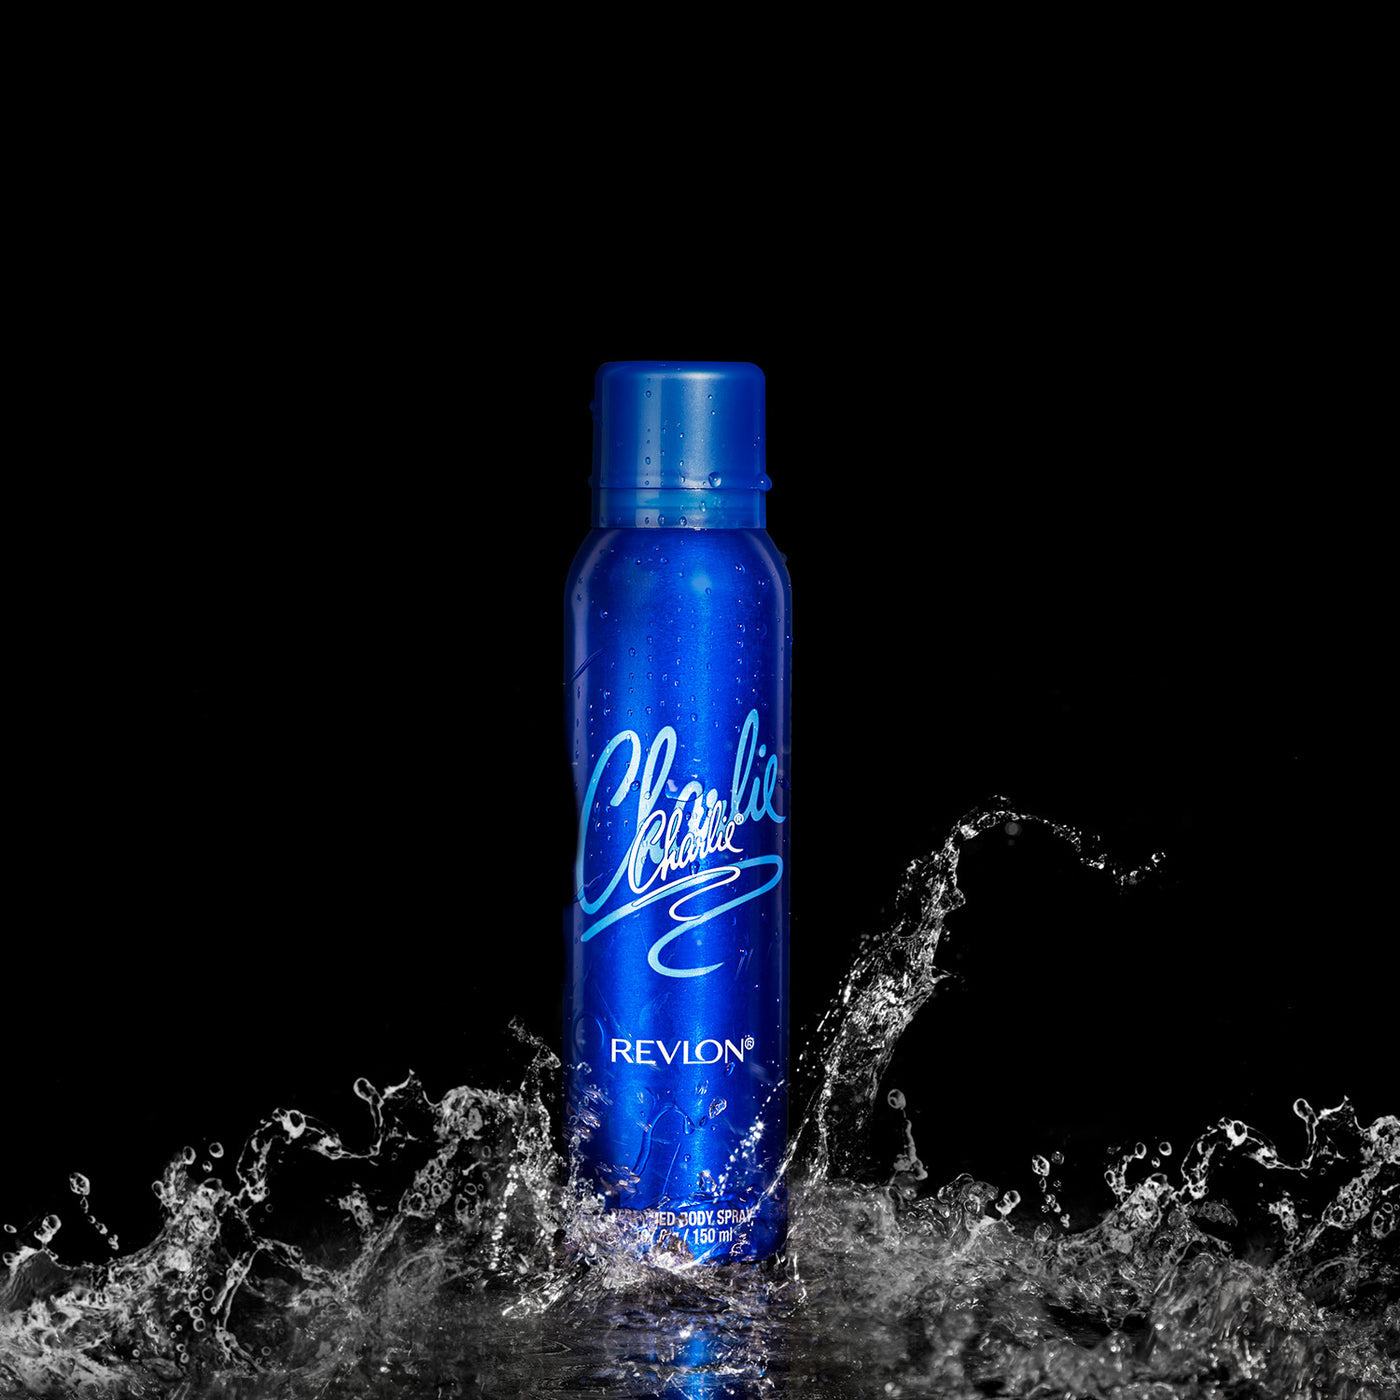 Charlie Blue Perfumed Body Spray